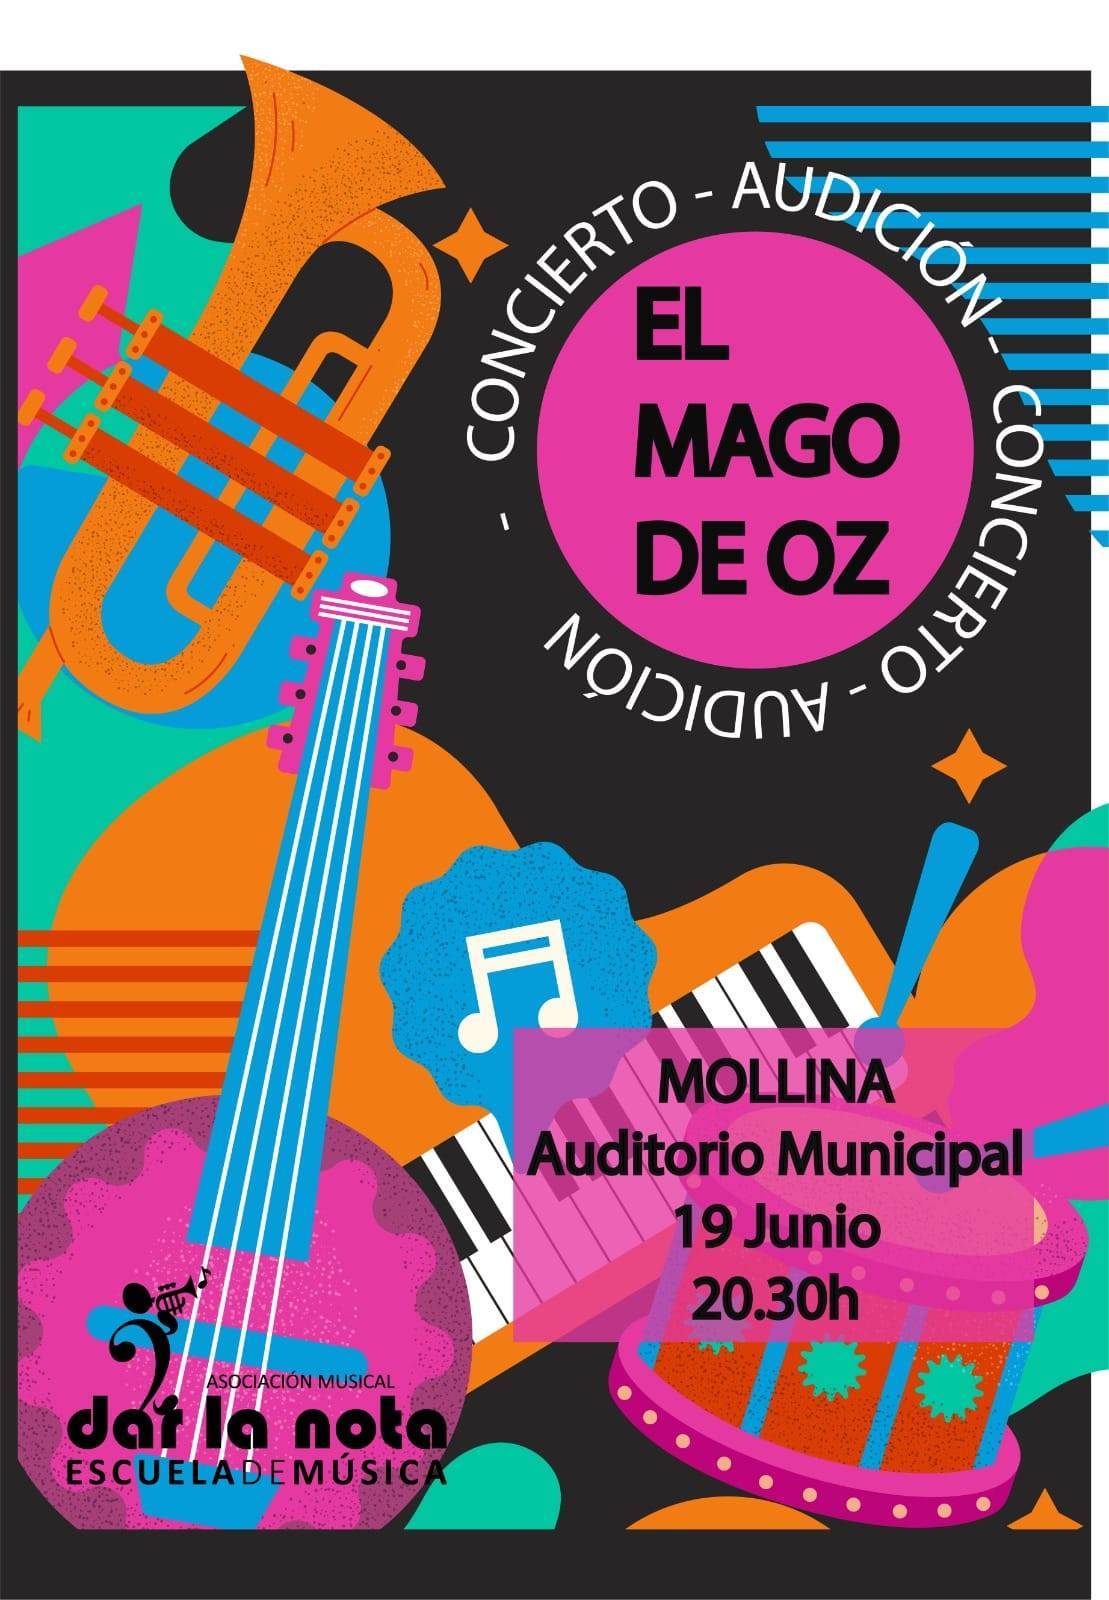 Concierto-audición El Mago de Oz (2021) - Mollina (Málaga)